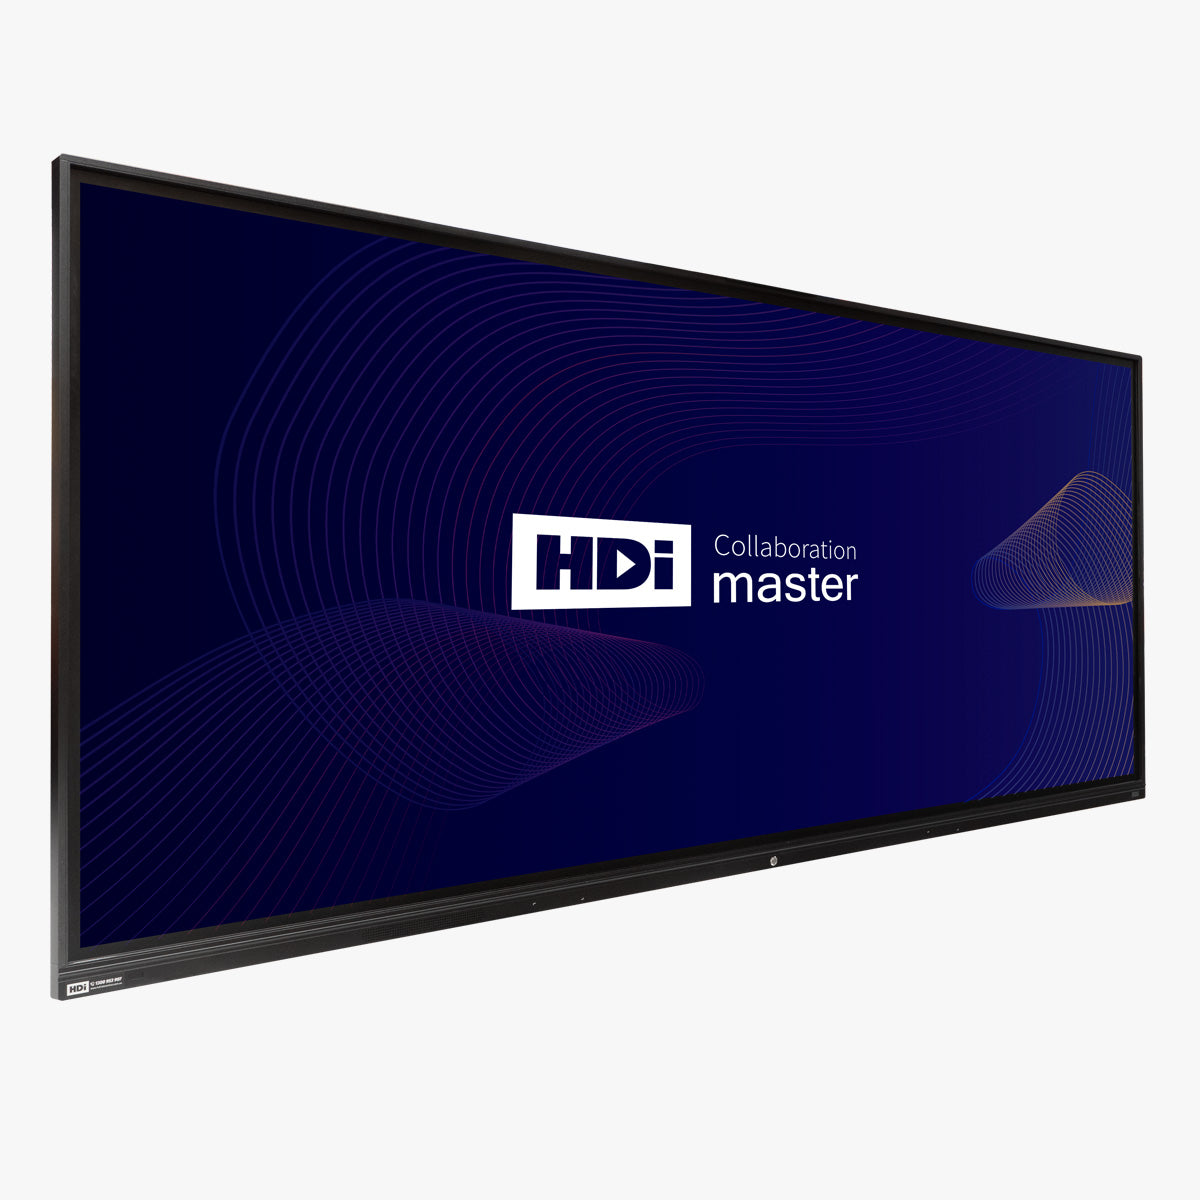 HDI Interatcive Display 105" Collaboration Master